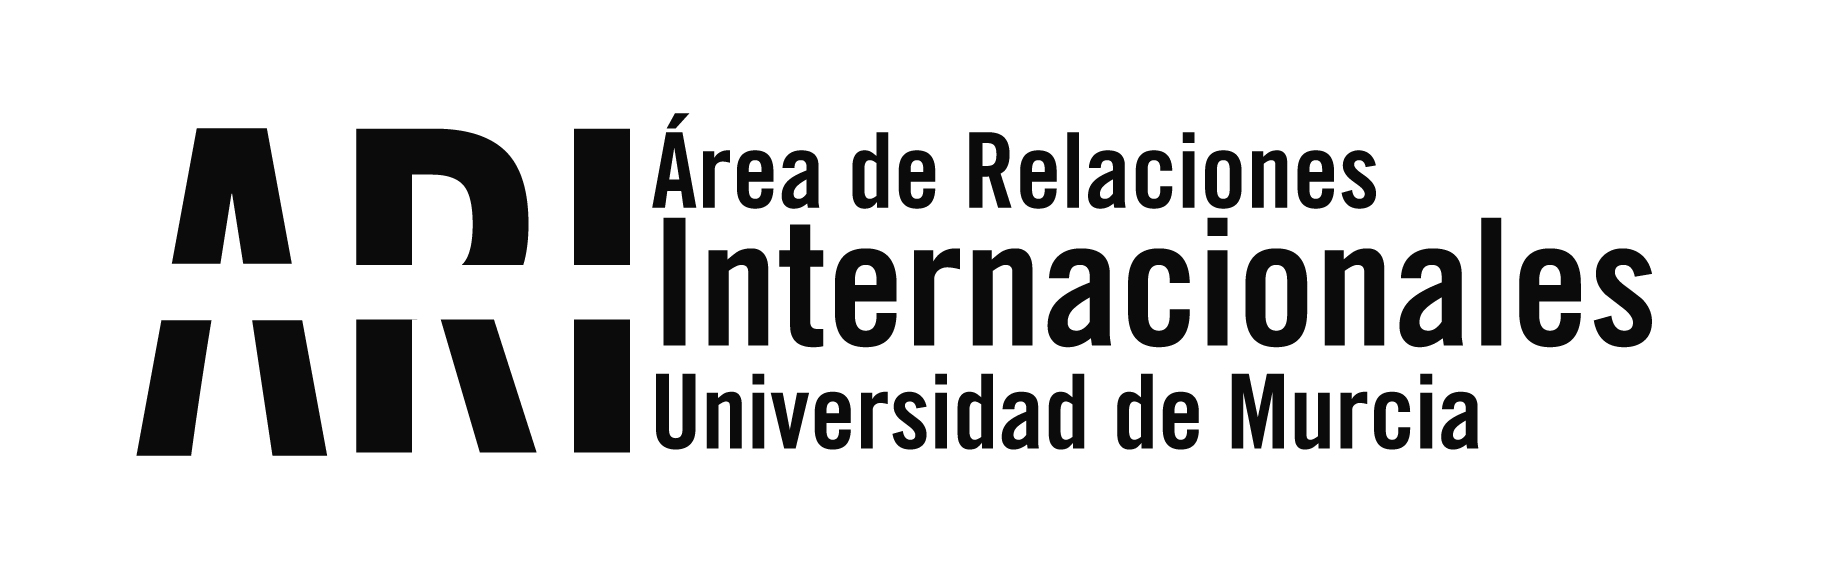 La UMU da la bienvenida a sus estudiantes internacionales del 2º cuatrimestre 2018-19 - Área de Relaciones Internacionales